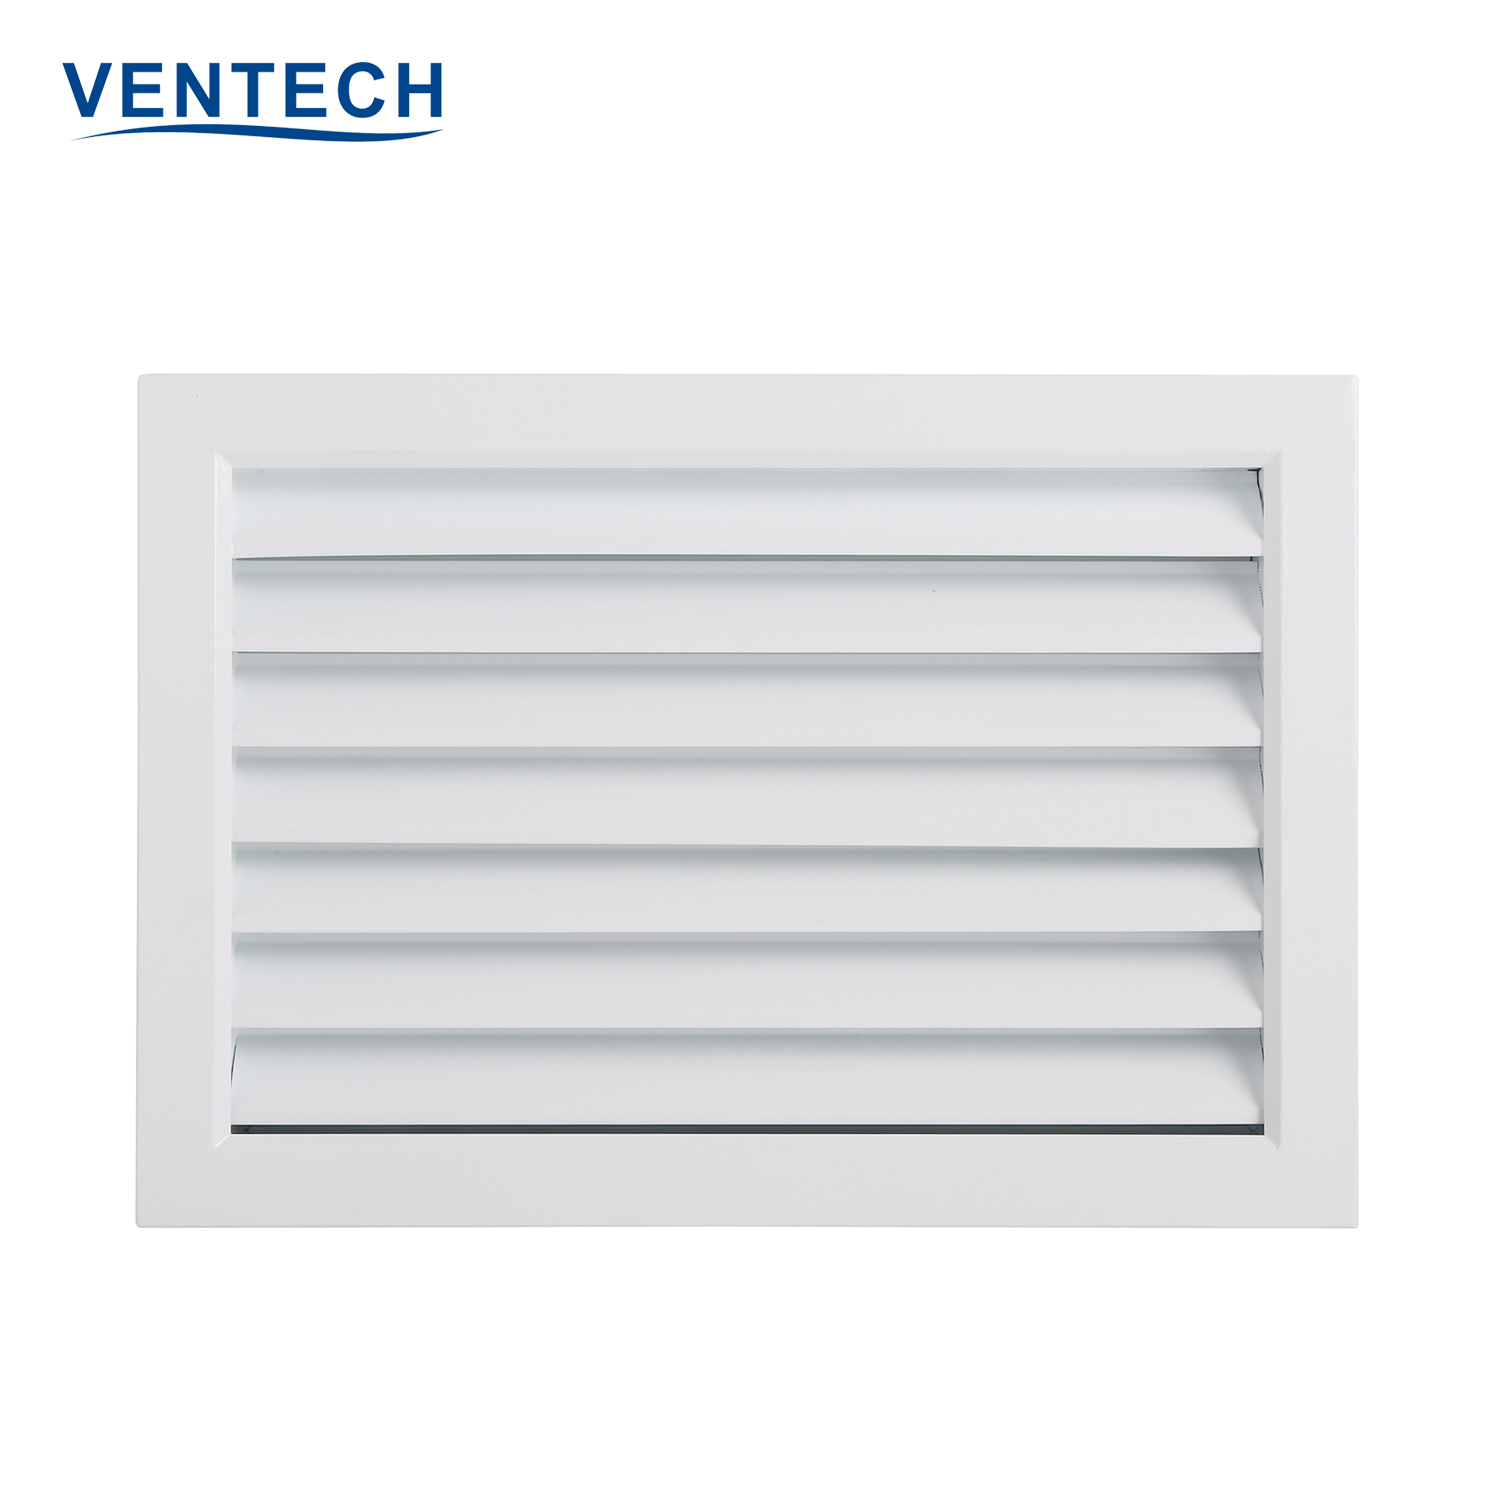 Ventech metal ventilation grilles series for sale-2